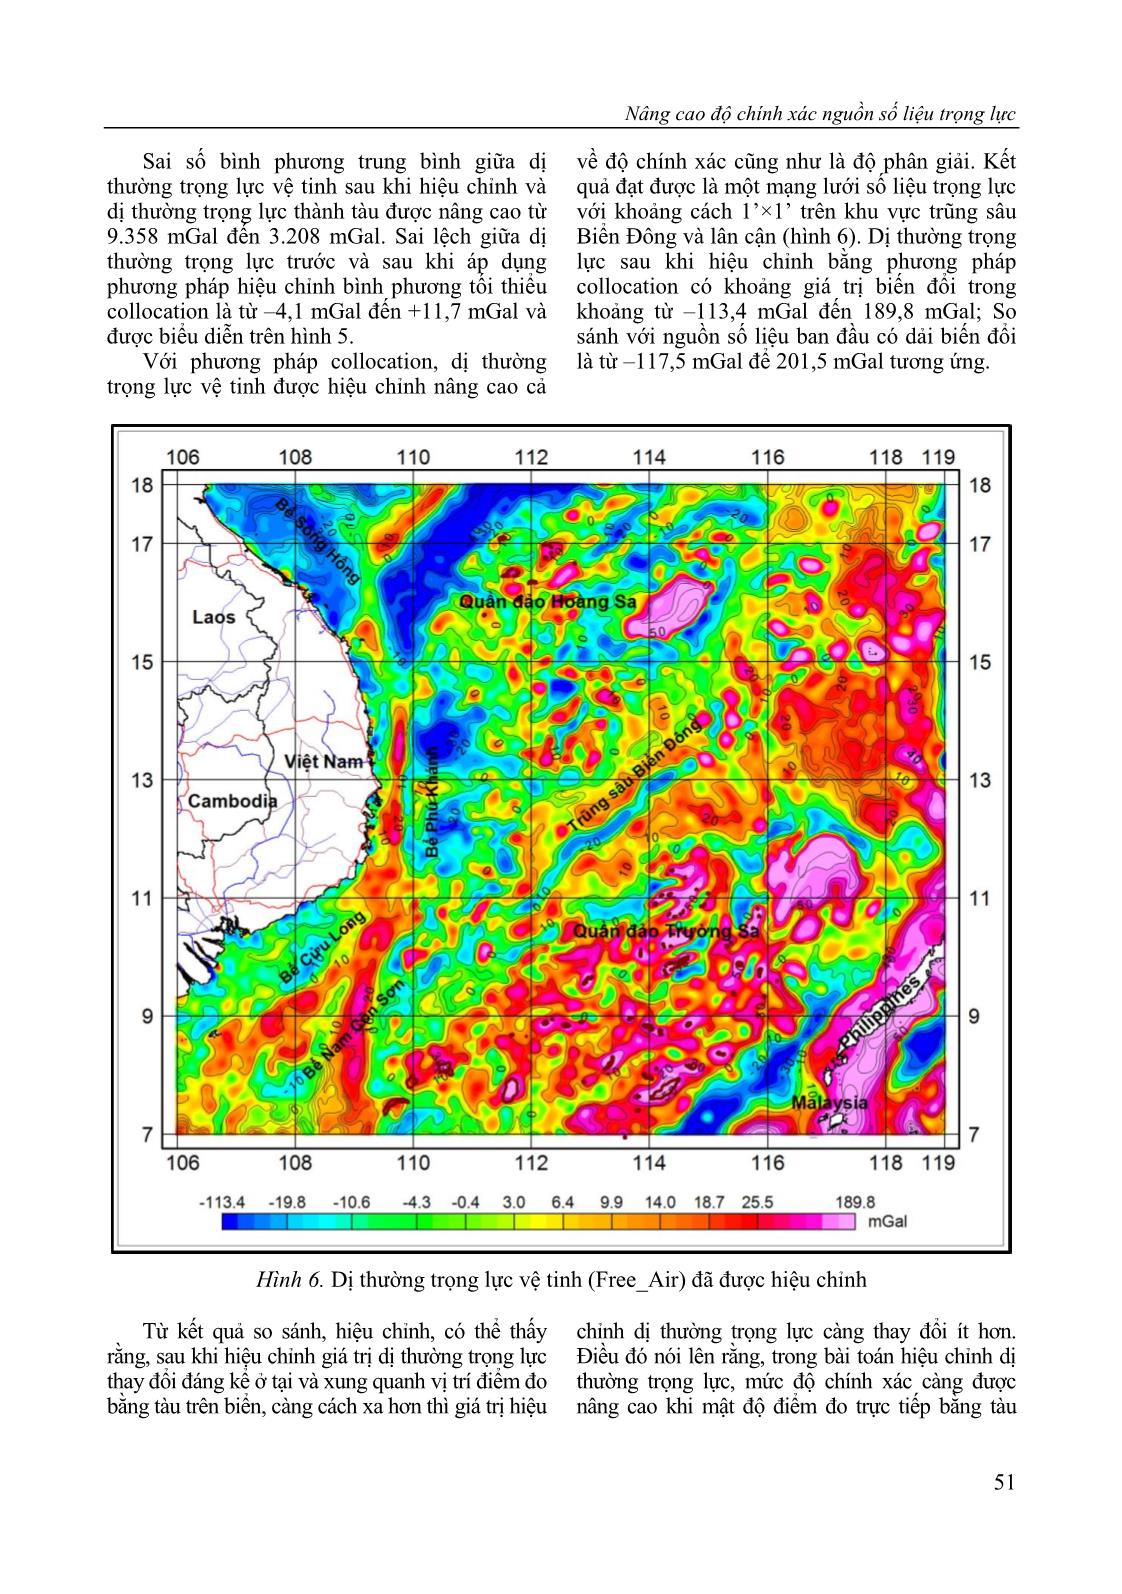 Nâng cao độ chính xác nguồn số liệu trọng lực trên khu vực trũng sâu Biển Đông và lân cận bằng phép tích hợp số liệu vệ tinh và số liệu đo trực tiếp trang 9